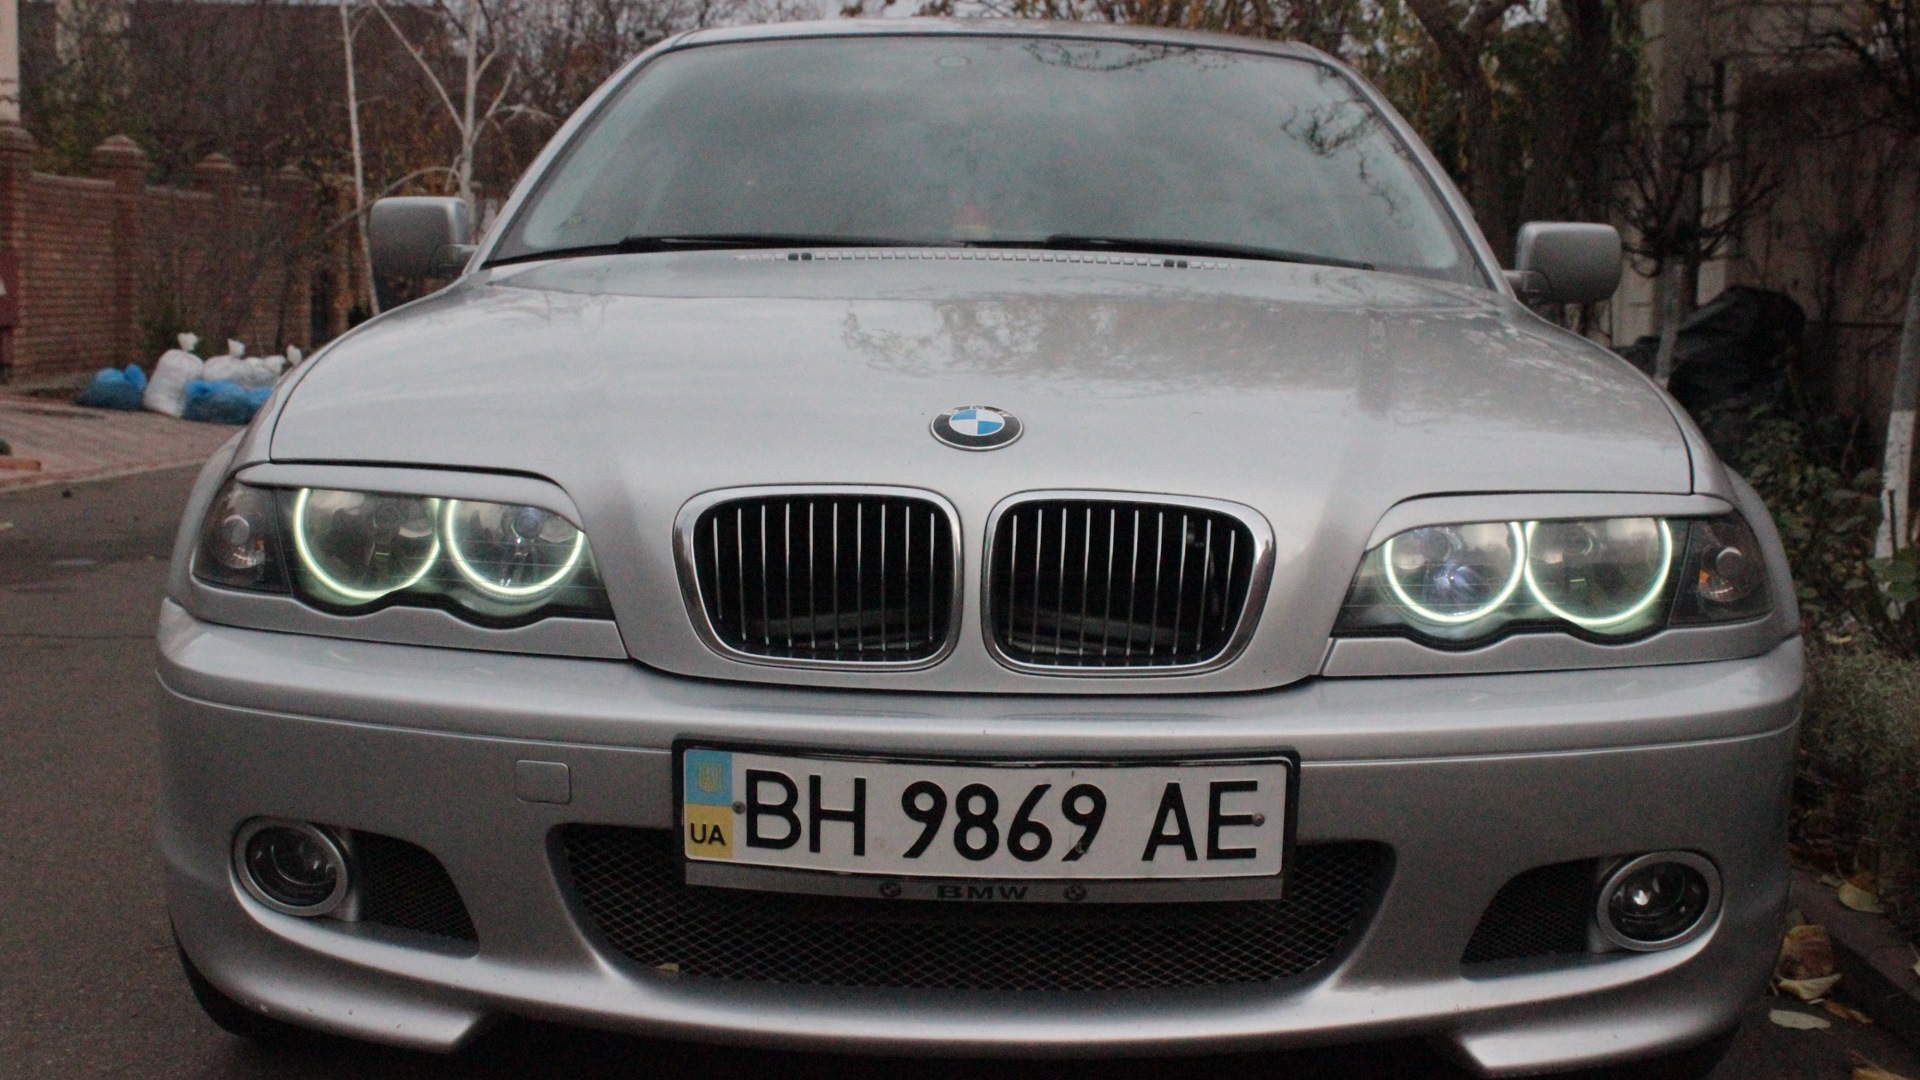 Глазки е46. Ангельские глазки на BMW e46. Ангельские глазки БМВ е46 дорестайл. Ангельские глазки БМВ е39 дорестайл. Е46 дорестайл.